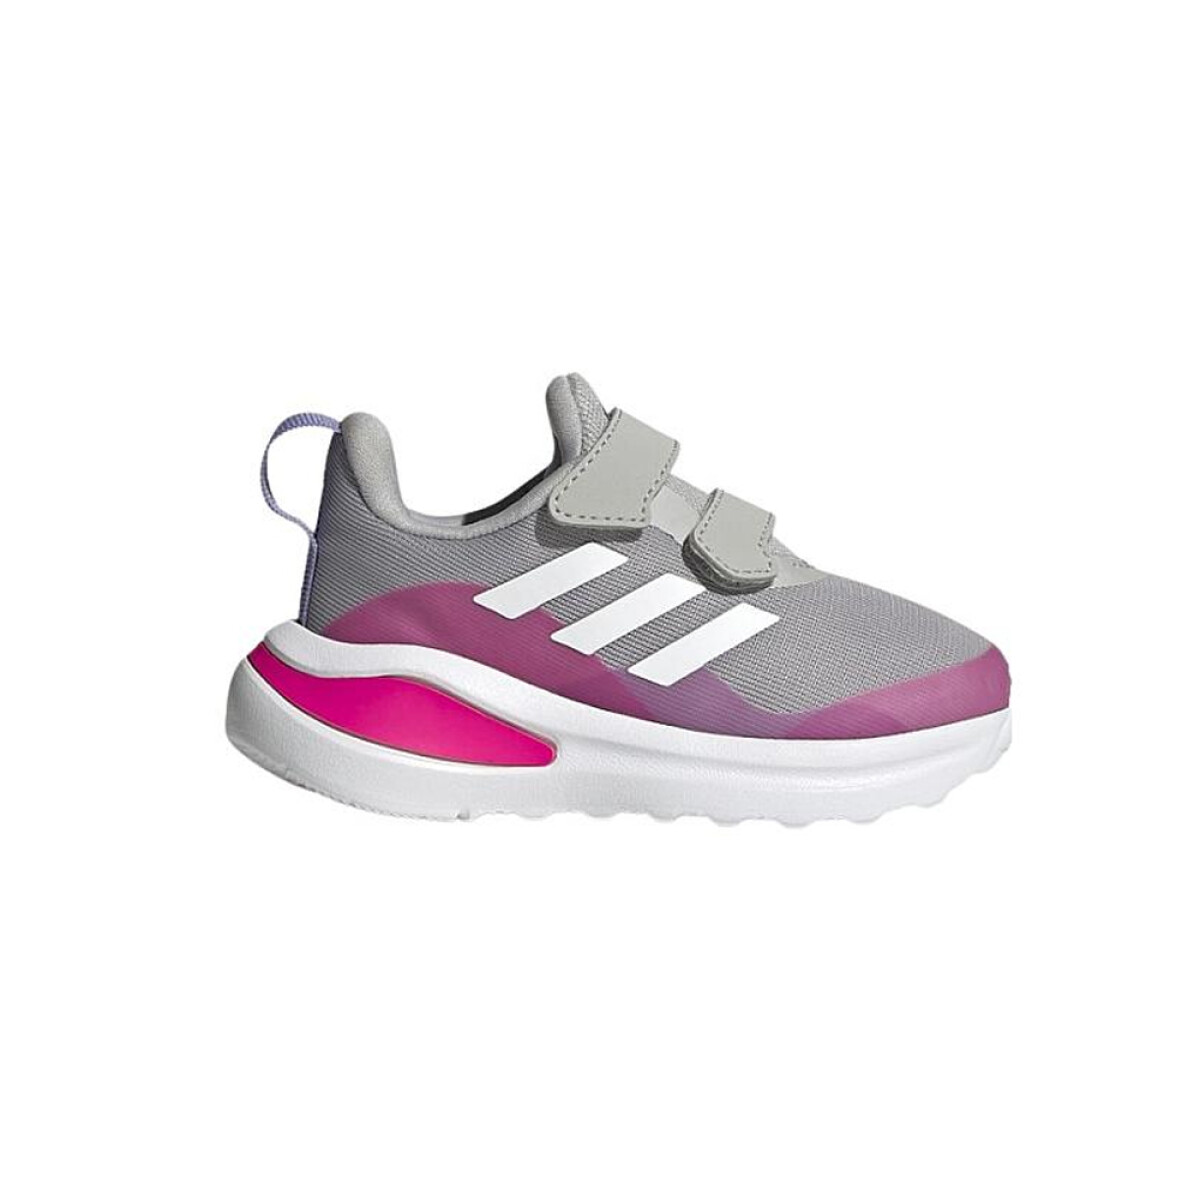 adidas FortaRun CF I - Grey/Pink/White 